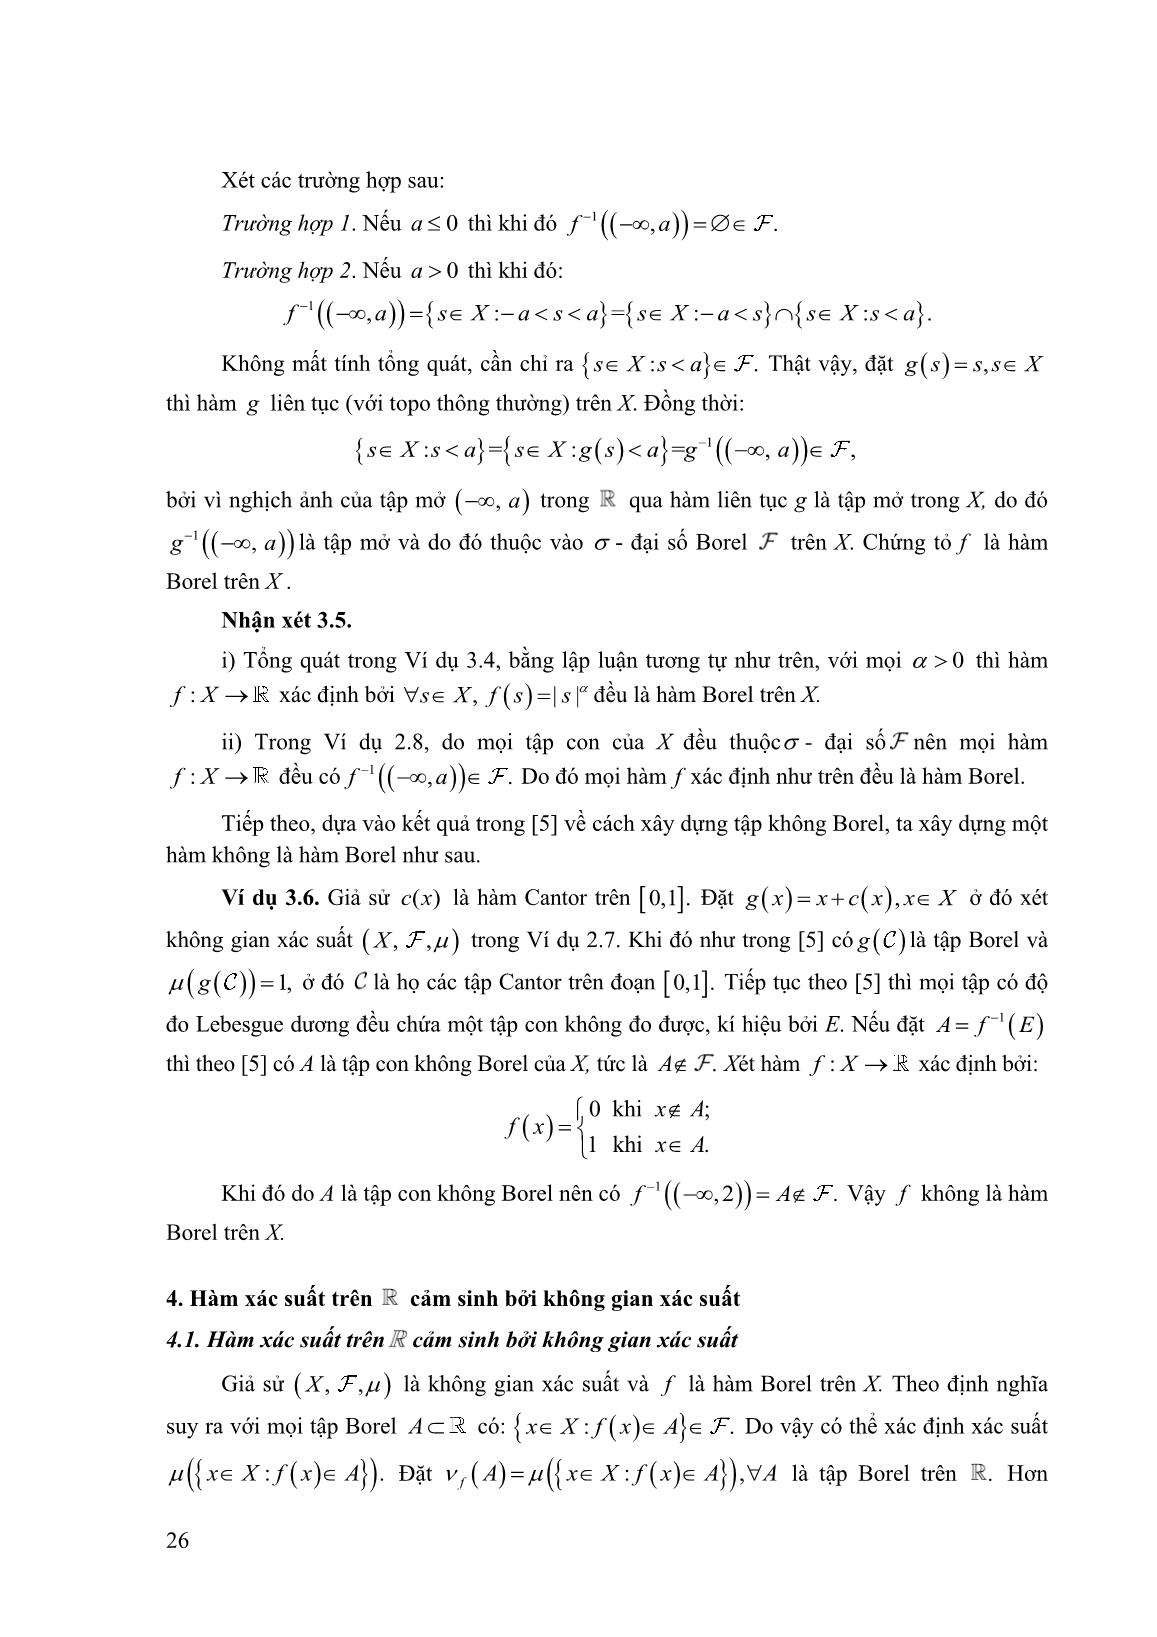 Một số không gian xác suất trên R trang 5